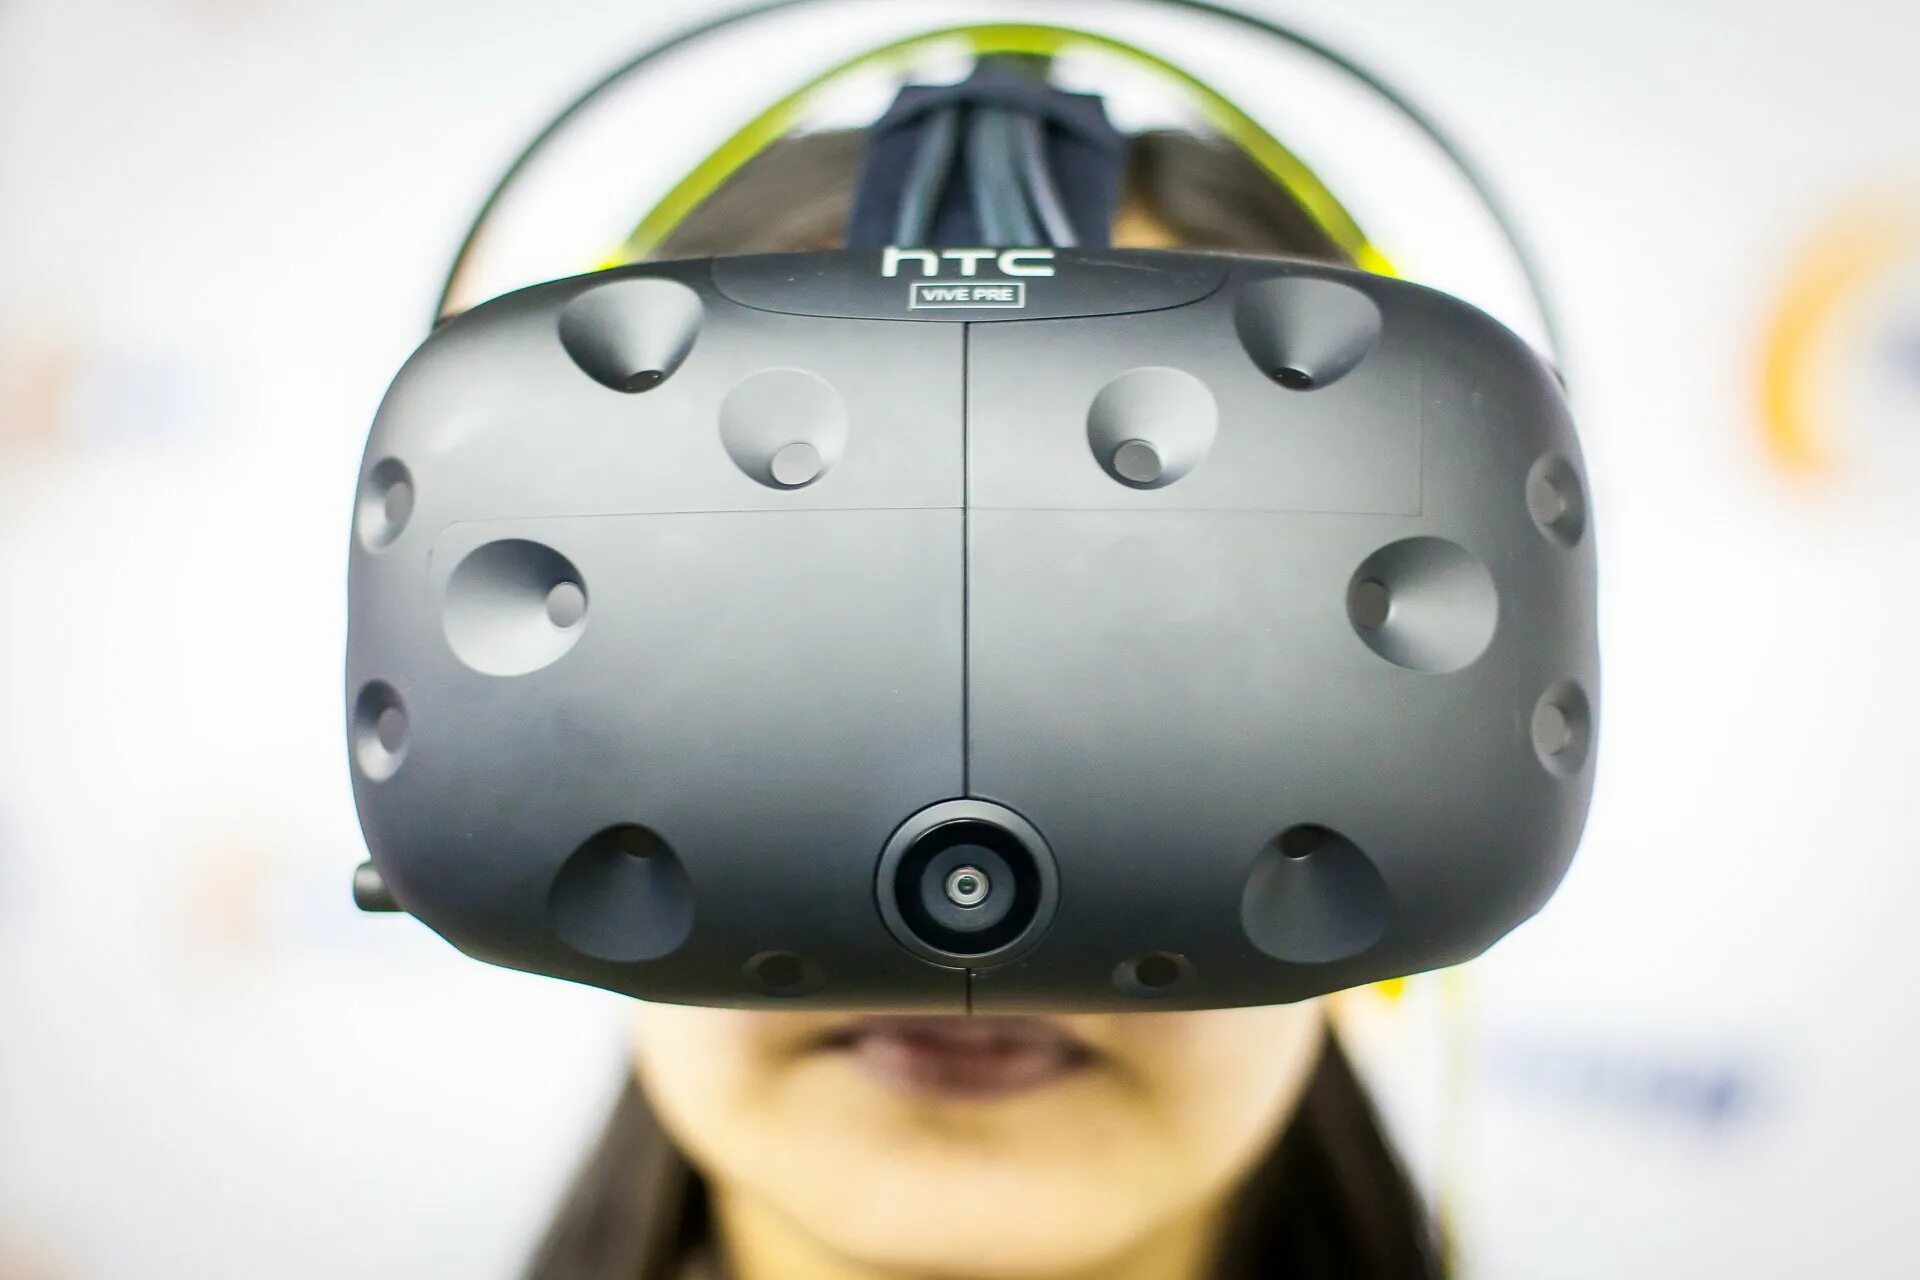 Шлем виртуальной реальности HTC Vive. VR шлем Vive. VR шлем HTC Viva. HTC Vive Pro 2 HMD. Виртуальная шлем купить для пк